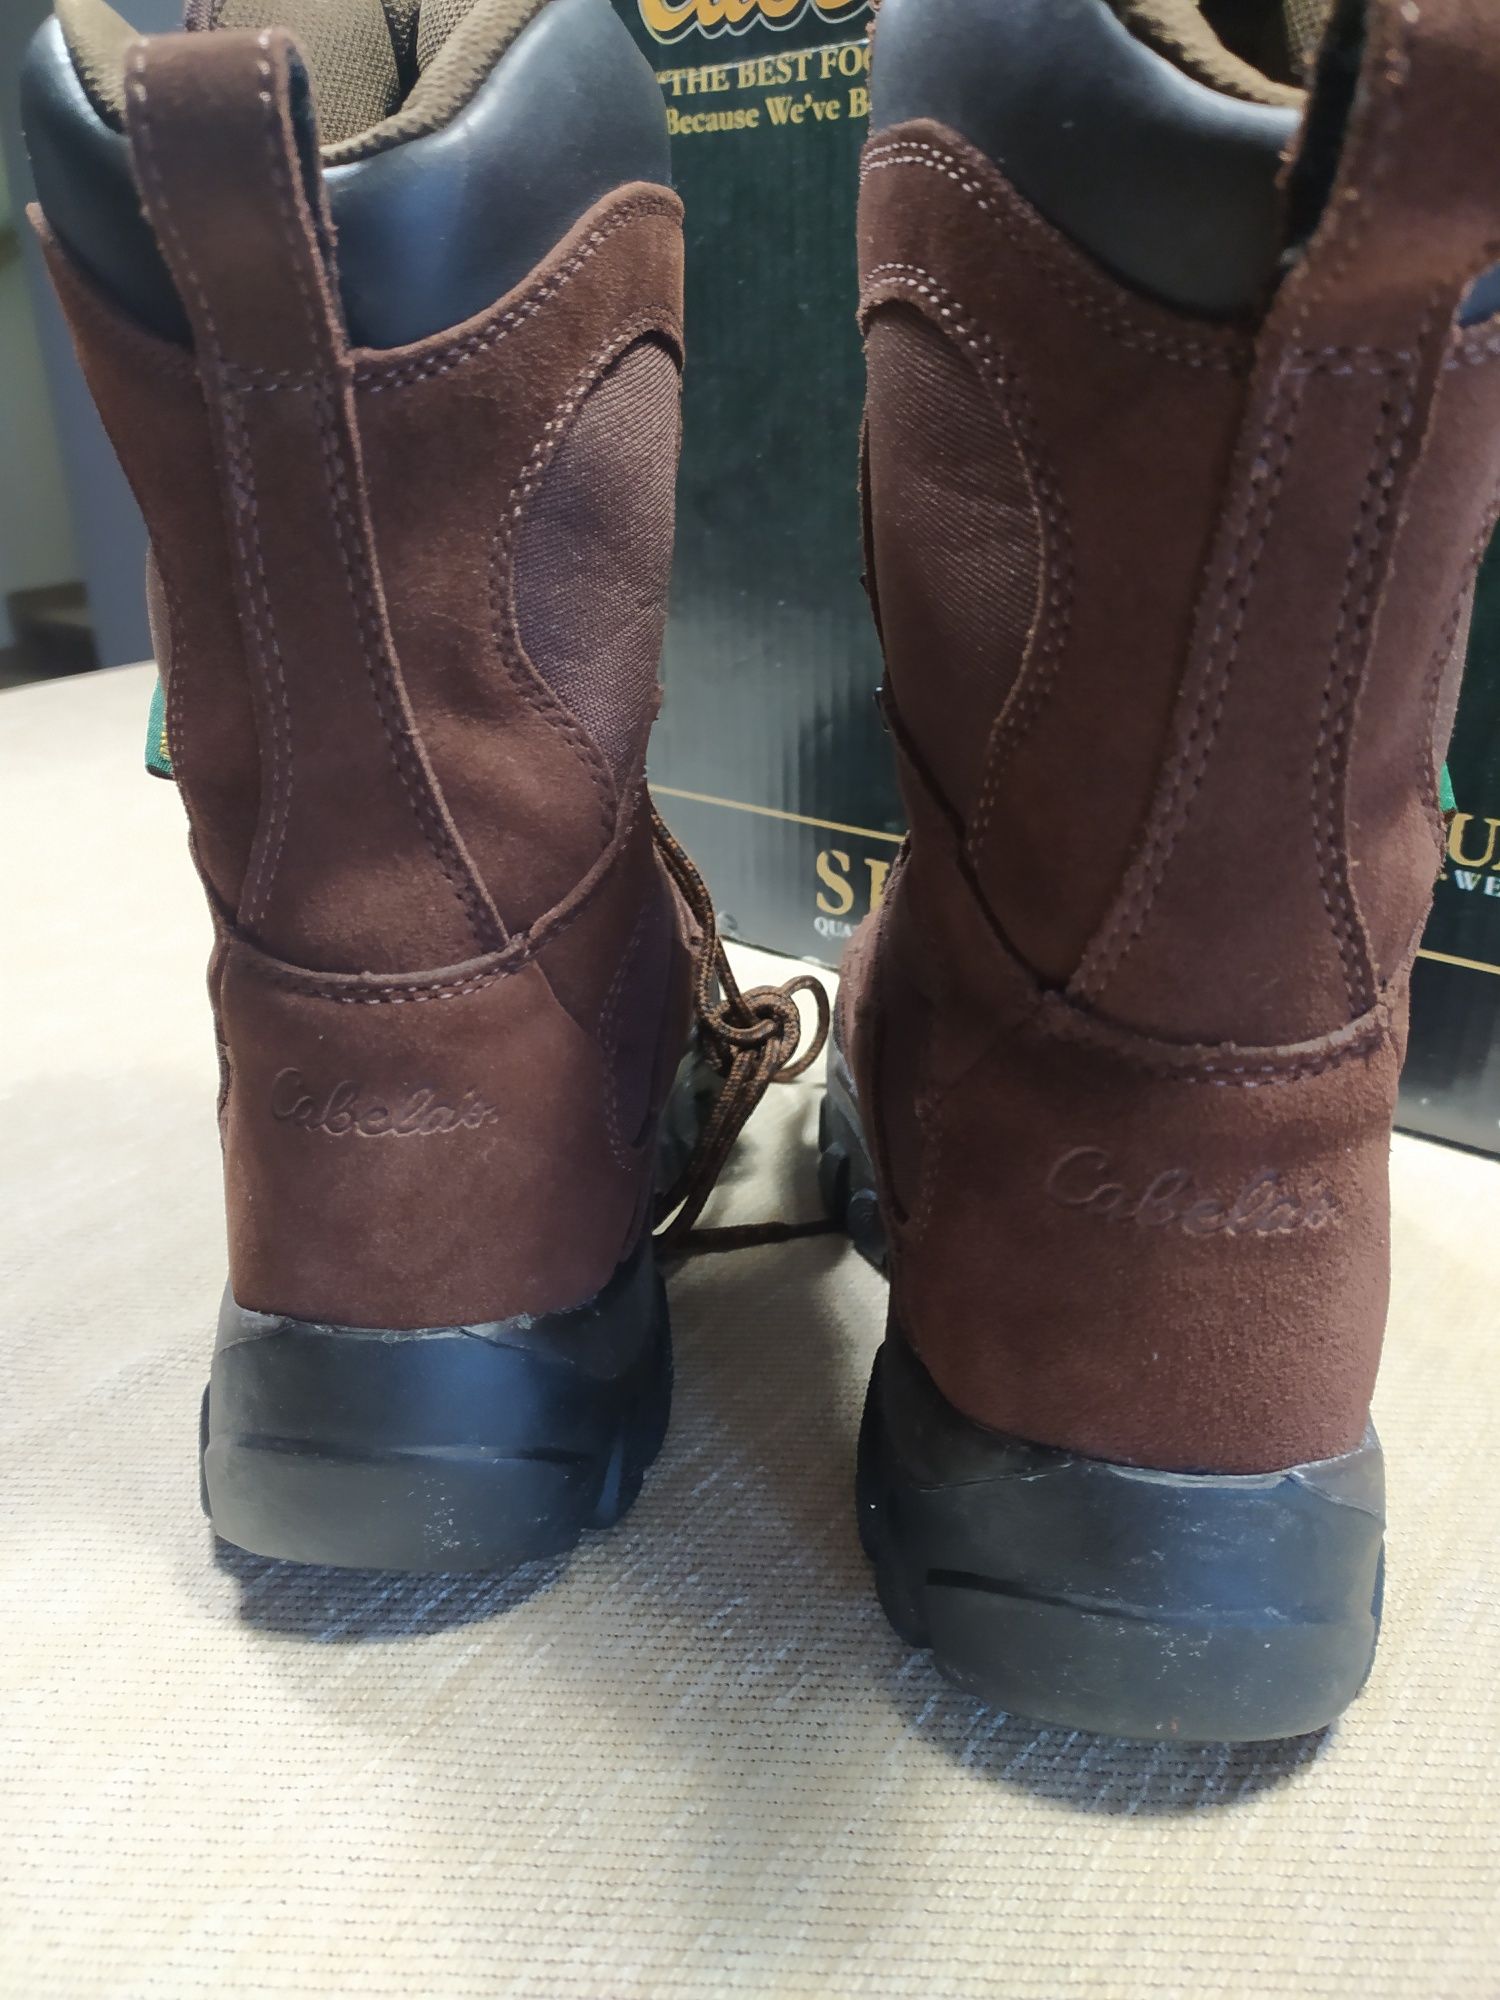 Теплые зимние ботинки Cabelas Snowy Range размер US6